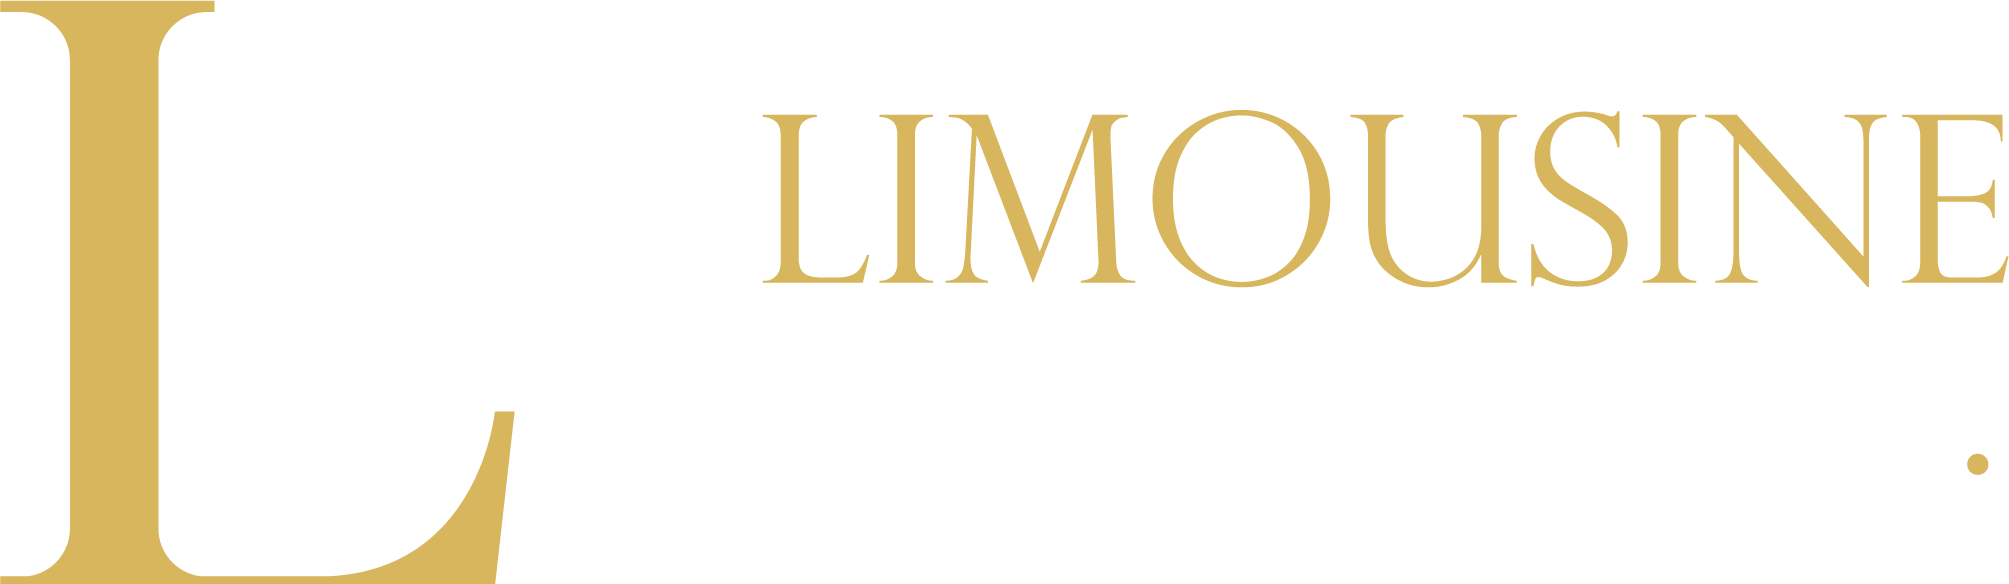 Limousine Bruxelles